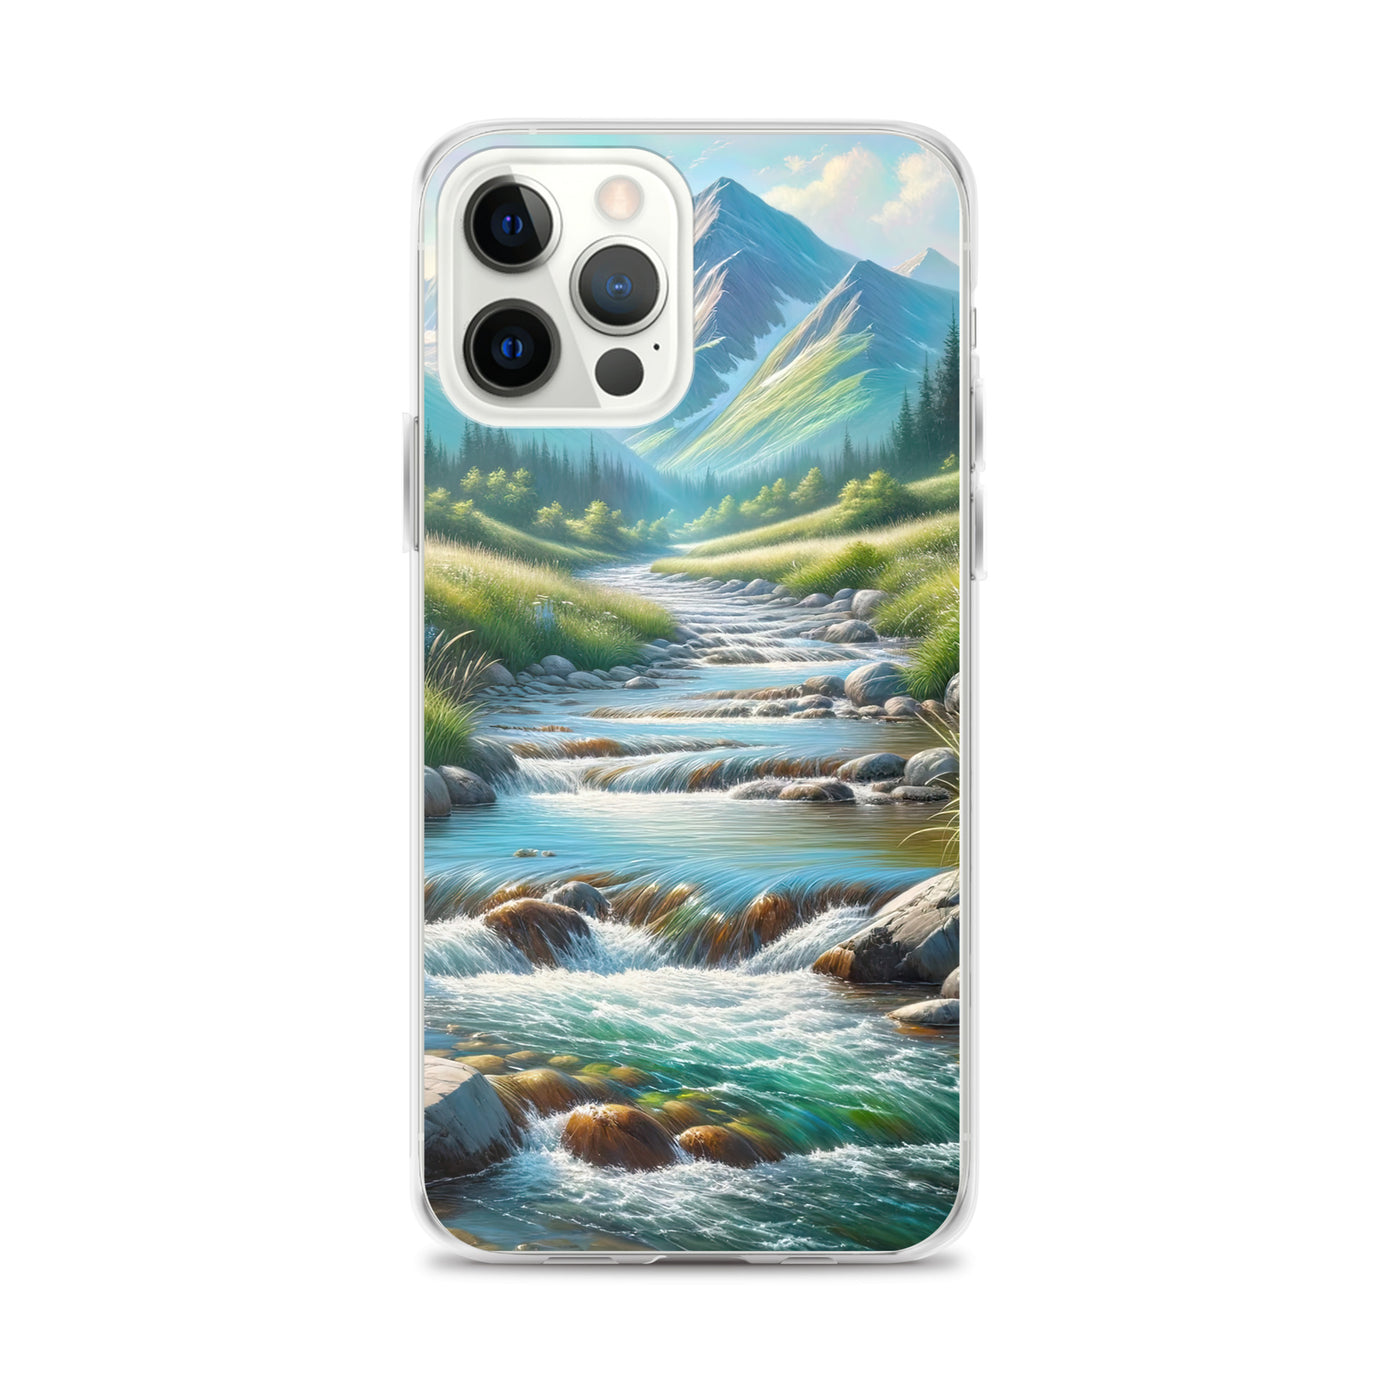 Sanfter Gebirgsbach in Ölgemälde, klares Wasser über glatten Felsen - iPhone Schutzhülle (durchsichtig) berge xxx yyy zzz iPhone 12 Pro Max